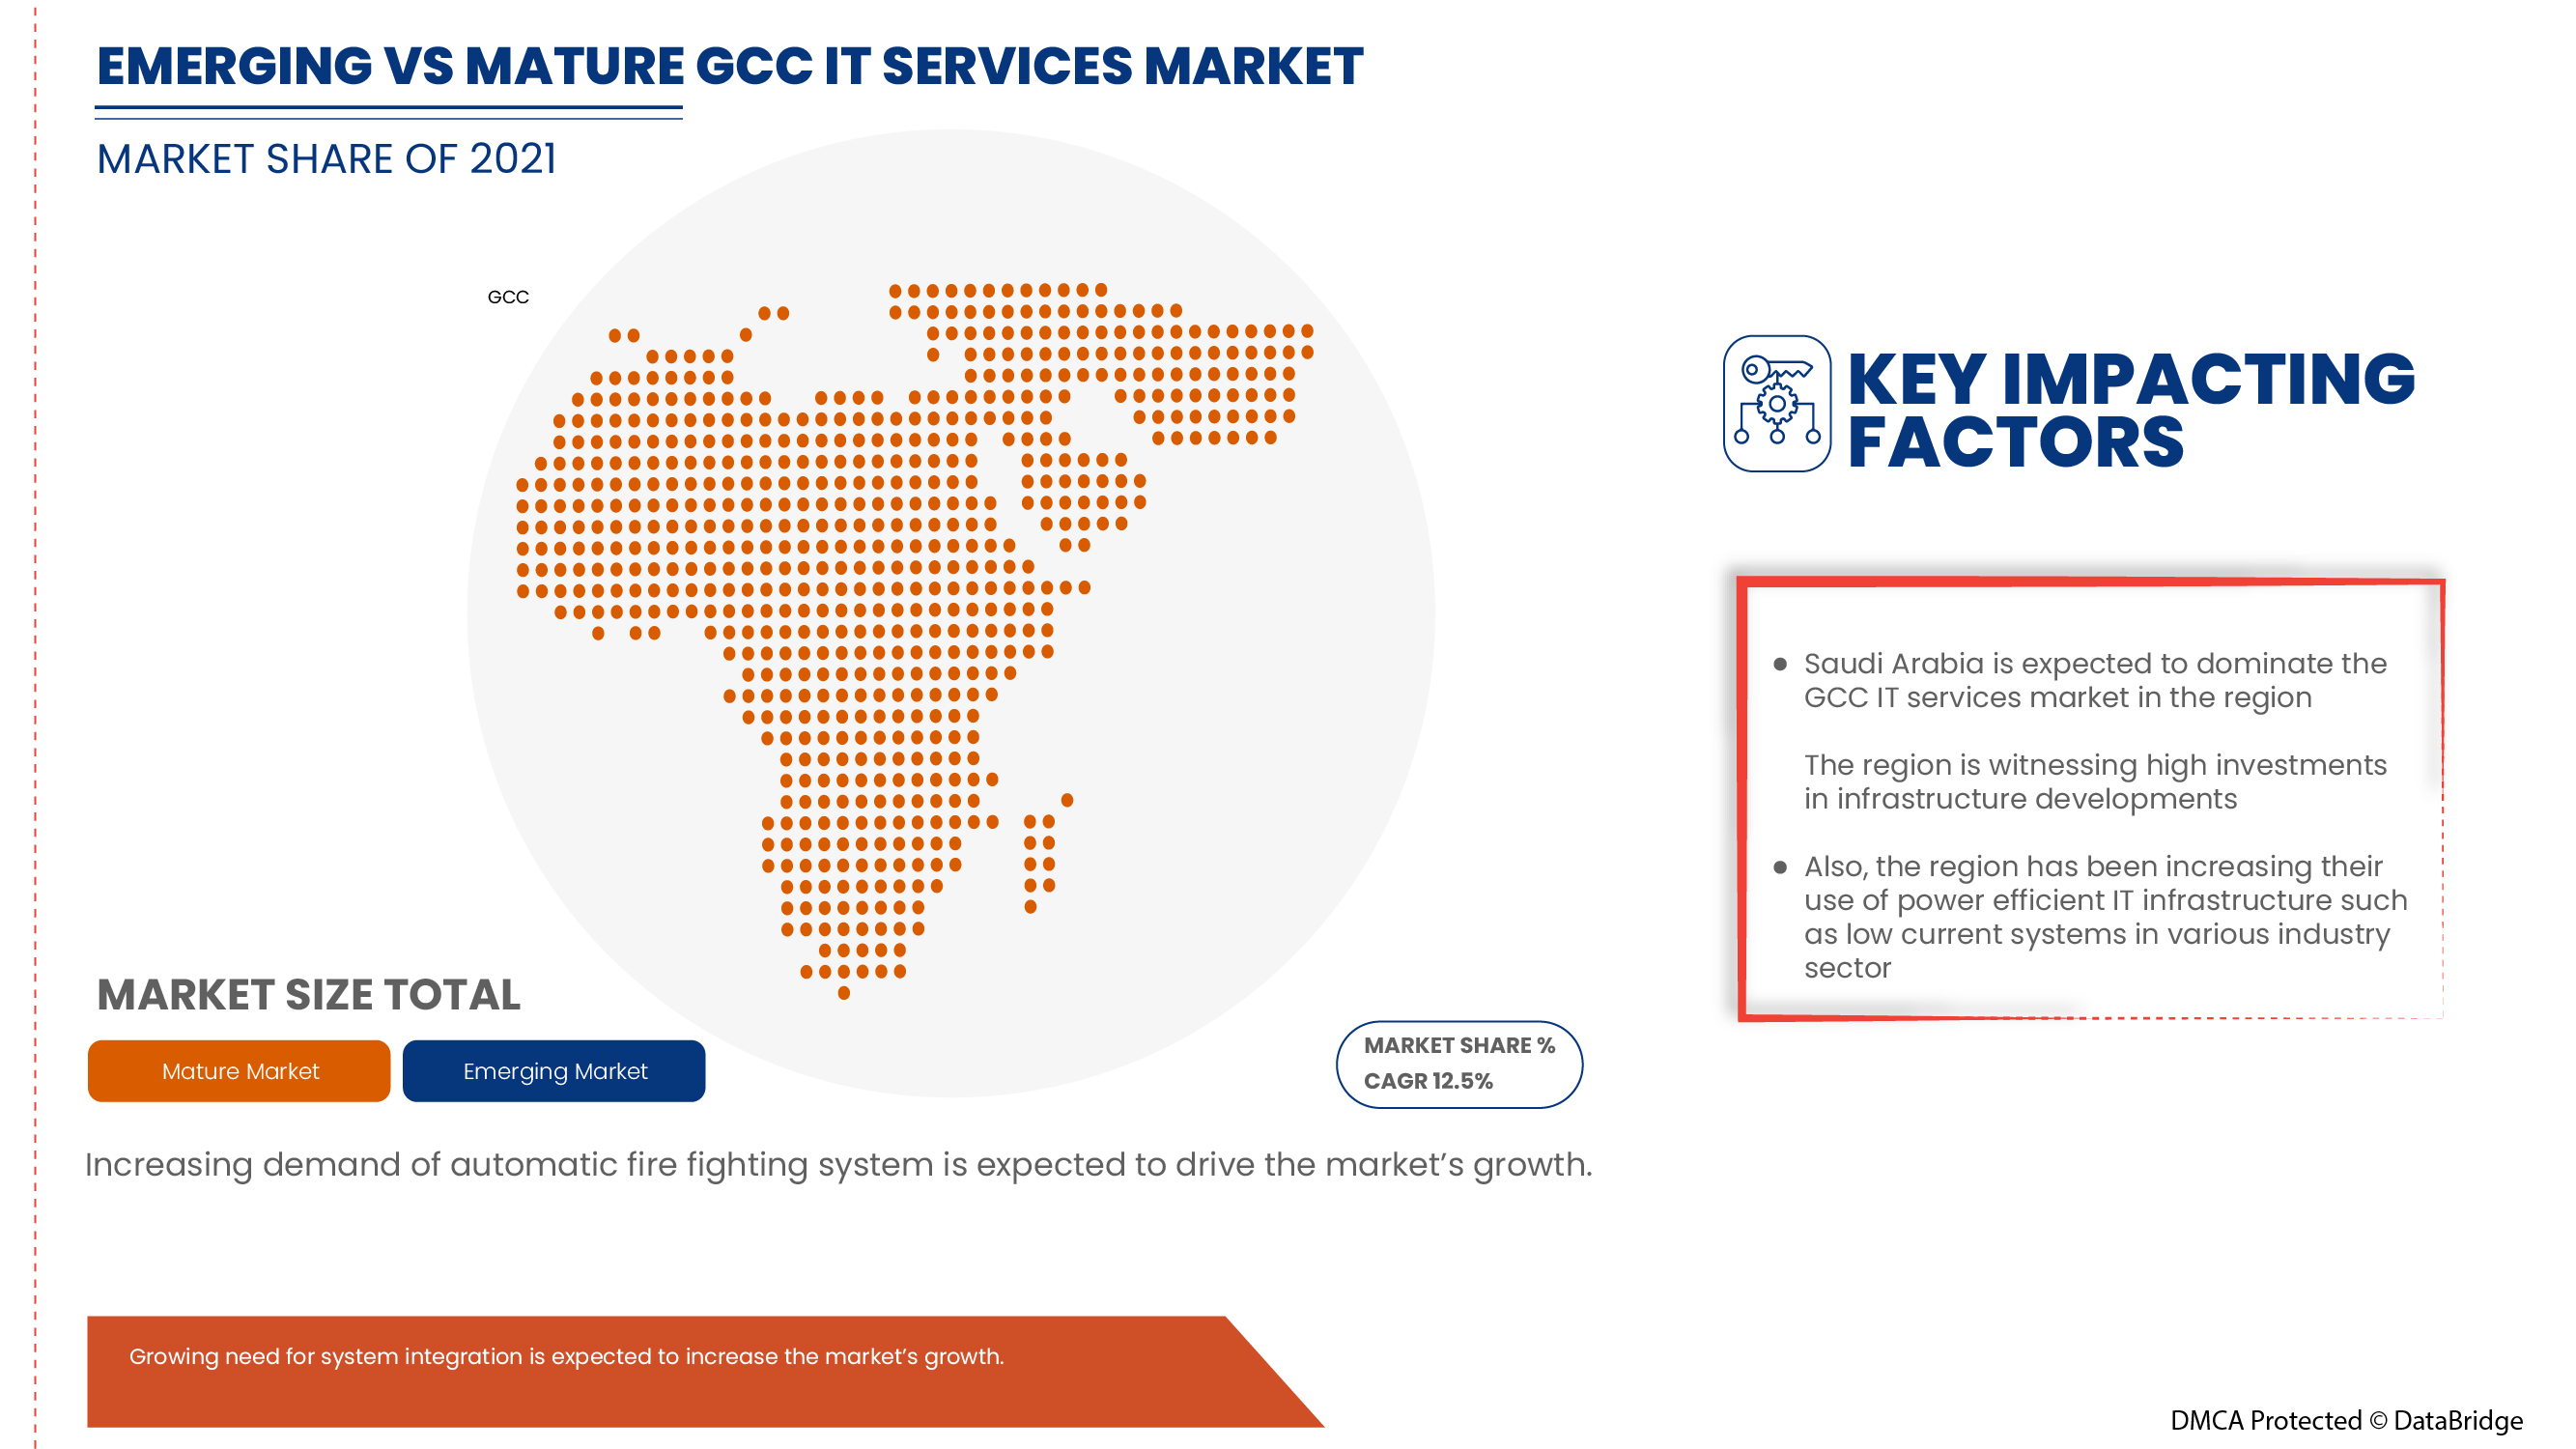 GCC IT Services Market